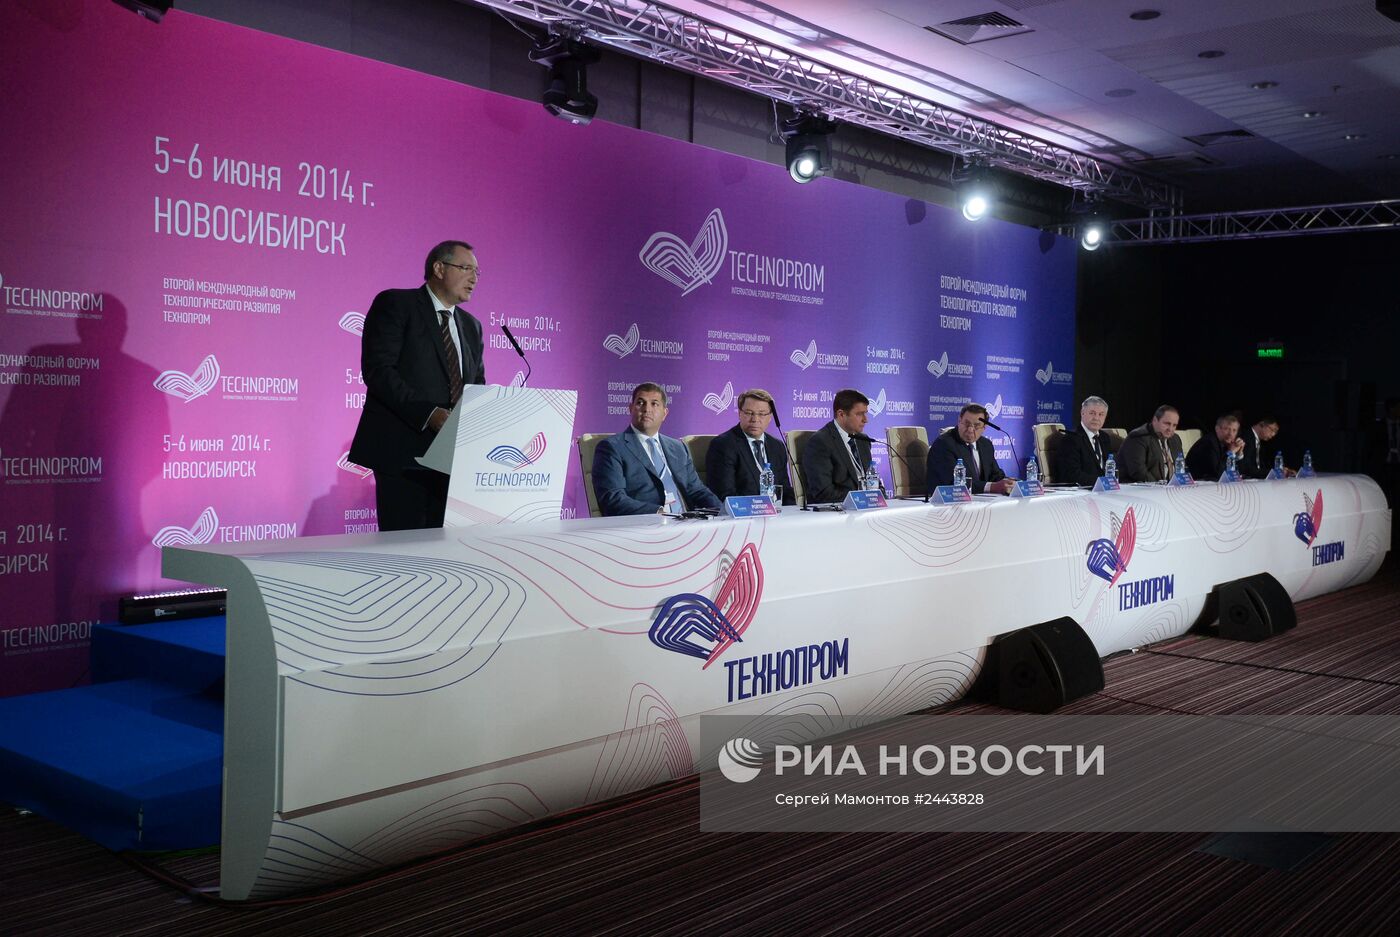 II Международный форум "Технопром". День второй